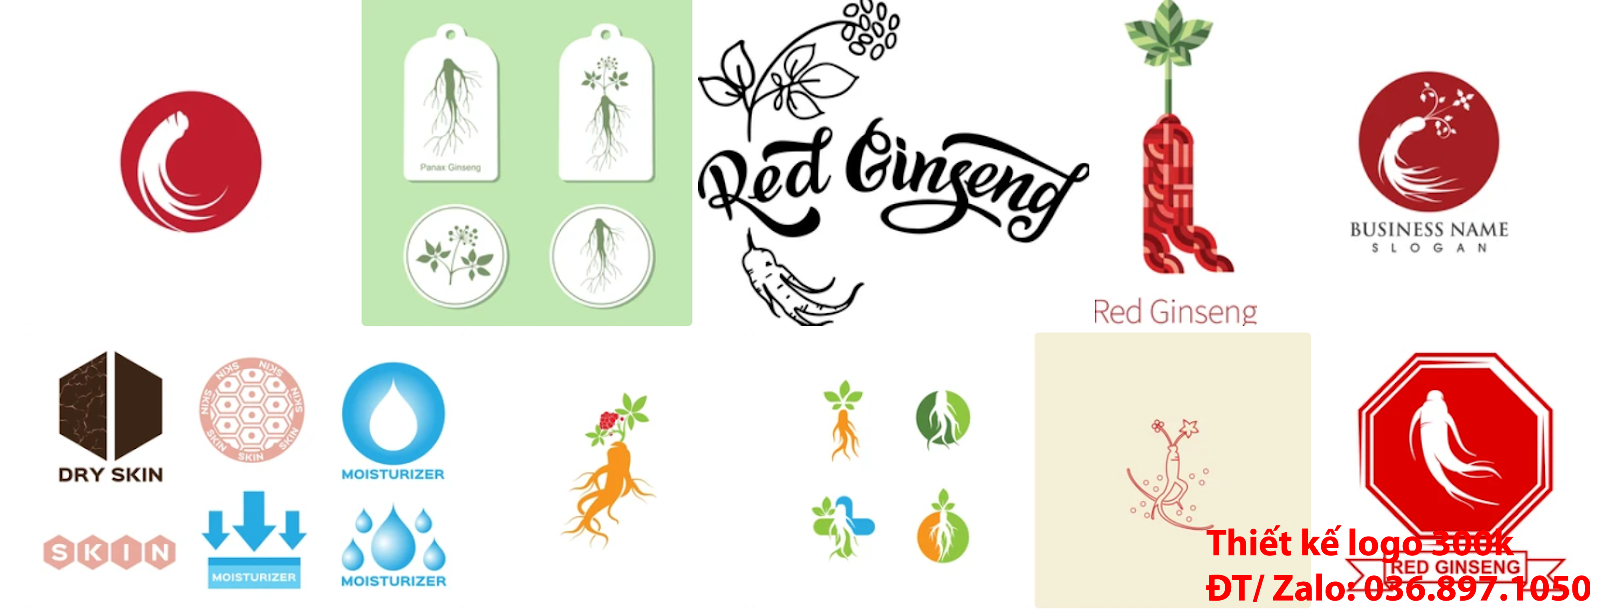 Mẫu logo đẹp nhân sâm sáng tạo được thiết kế bởi công ty tạo lô gô online tại Sài Gòn